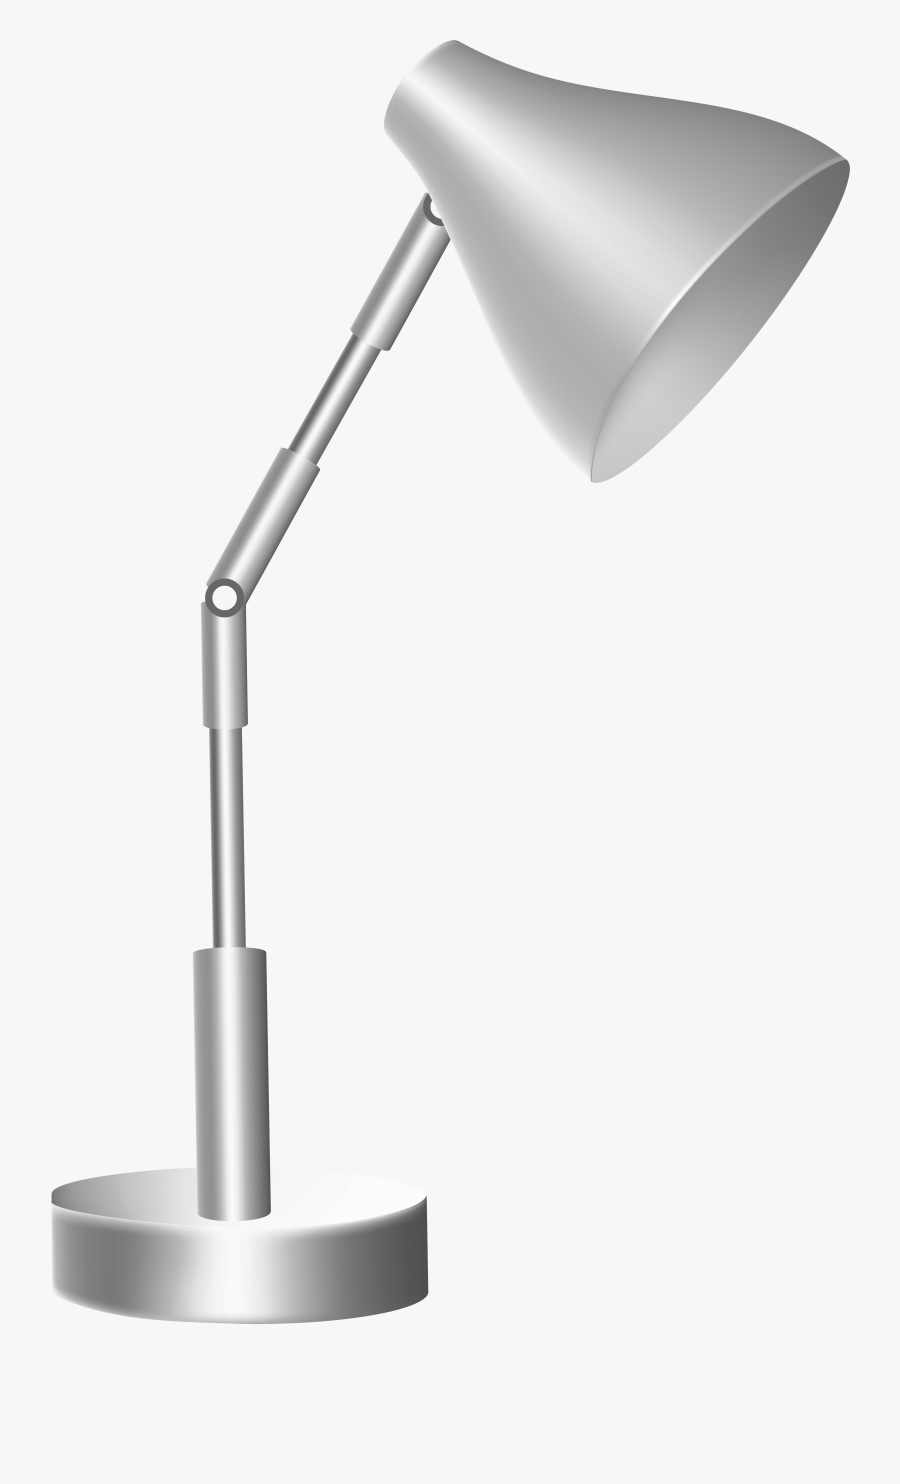 Silver Desk Lamp Png Clip Art, Transparent Clipart